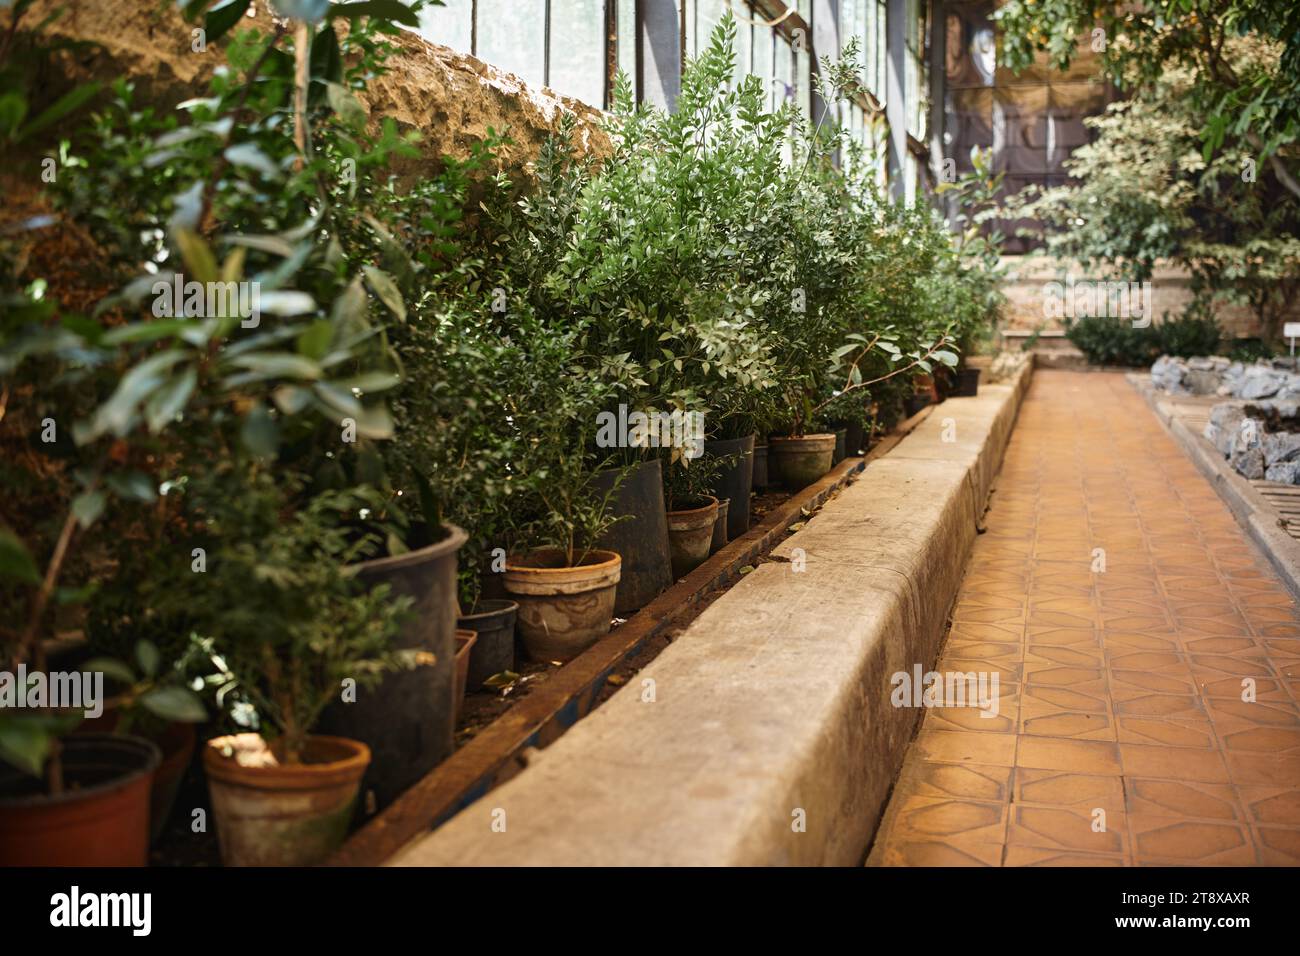 plantes fraîches et buissons et arbres à l'intérieur de la serre, concept d'écosystème de jardin intérieur Banque D'Images